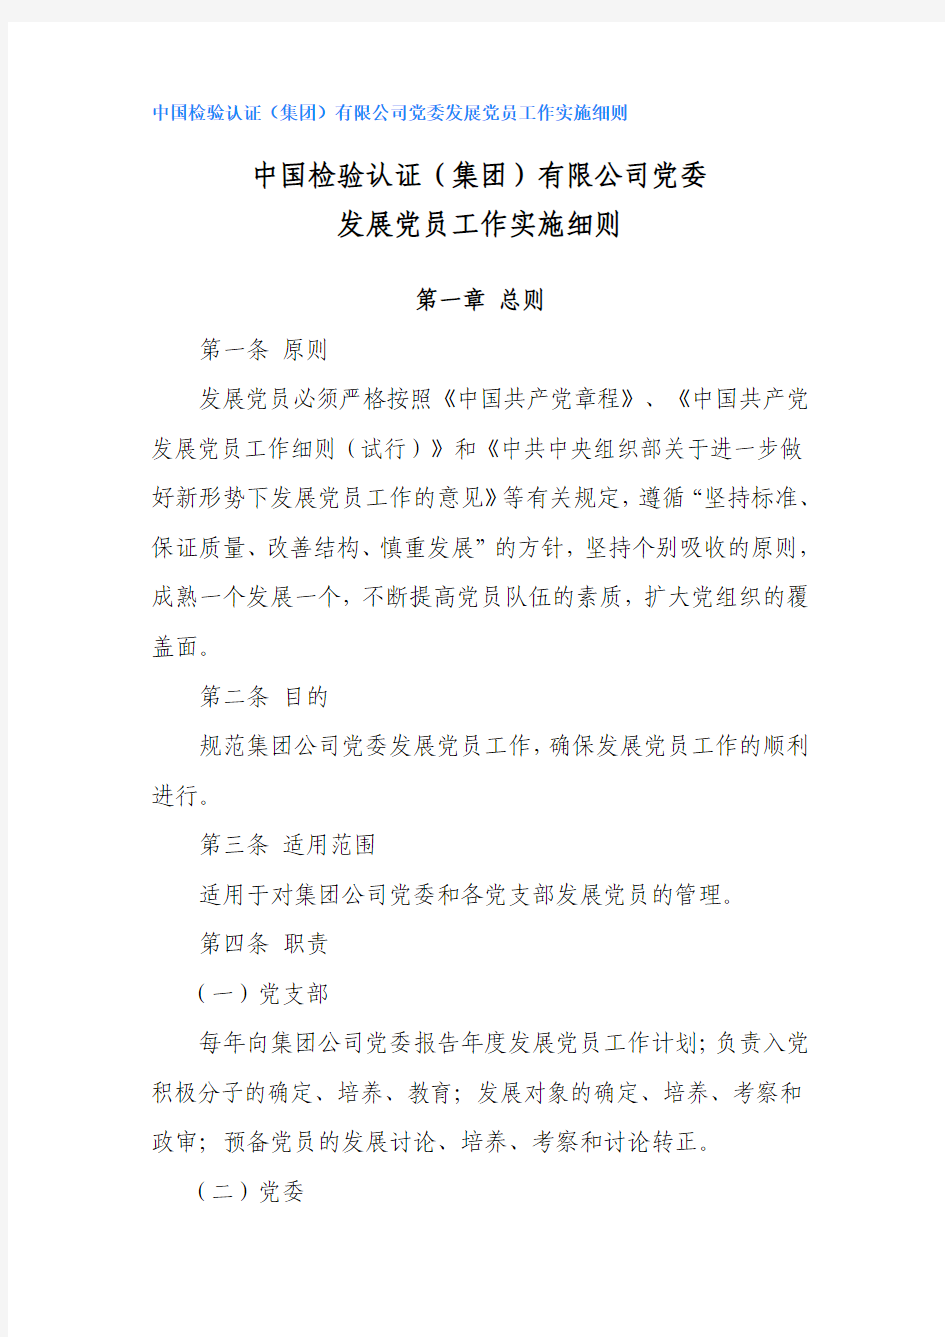 中国检验认证(集团)有限公司党委发展党员工作实施细则